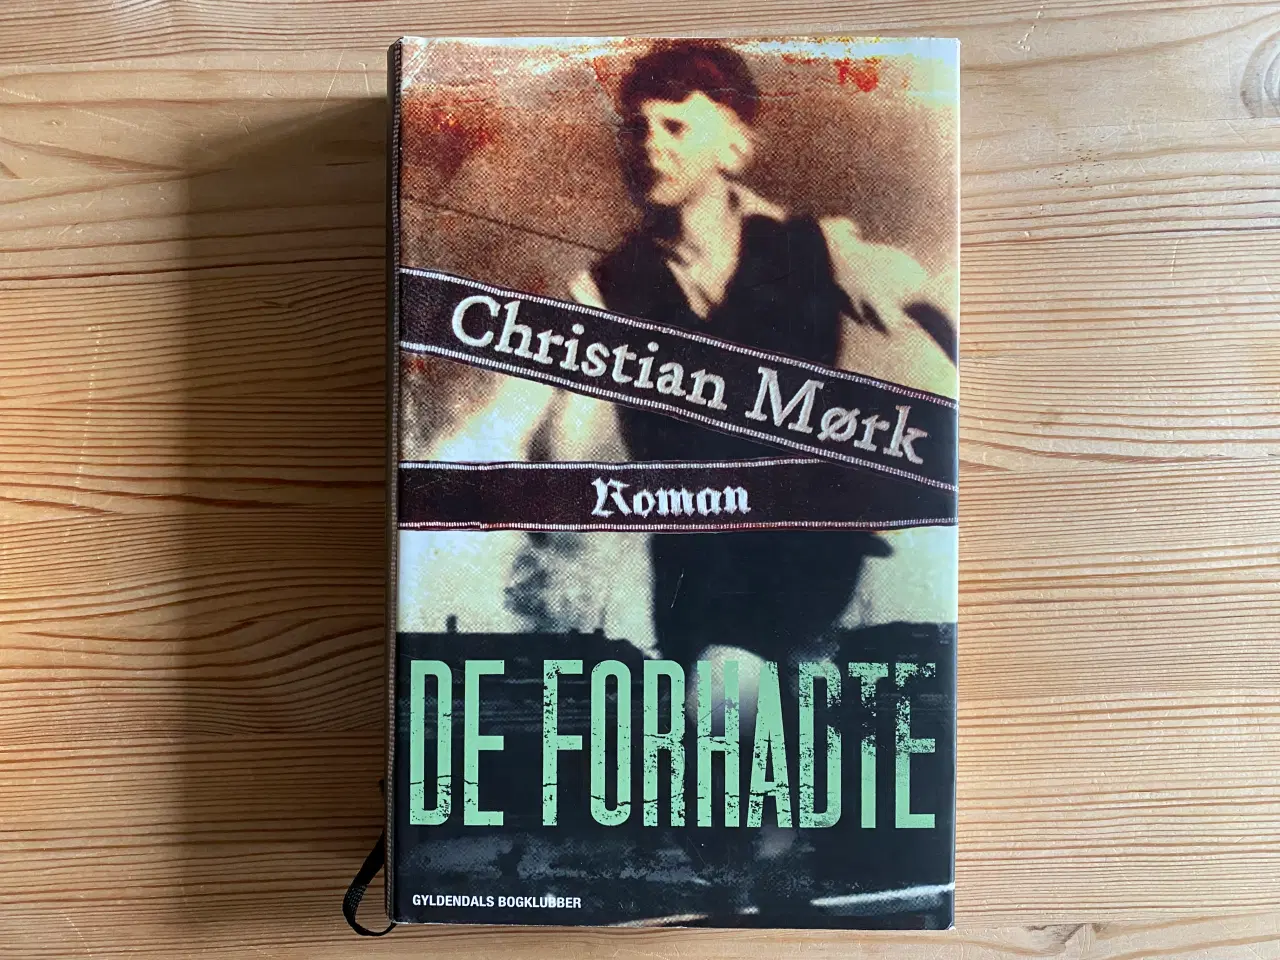 Billede 2 - Christian Mørk, 4 romaner